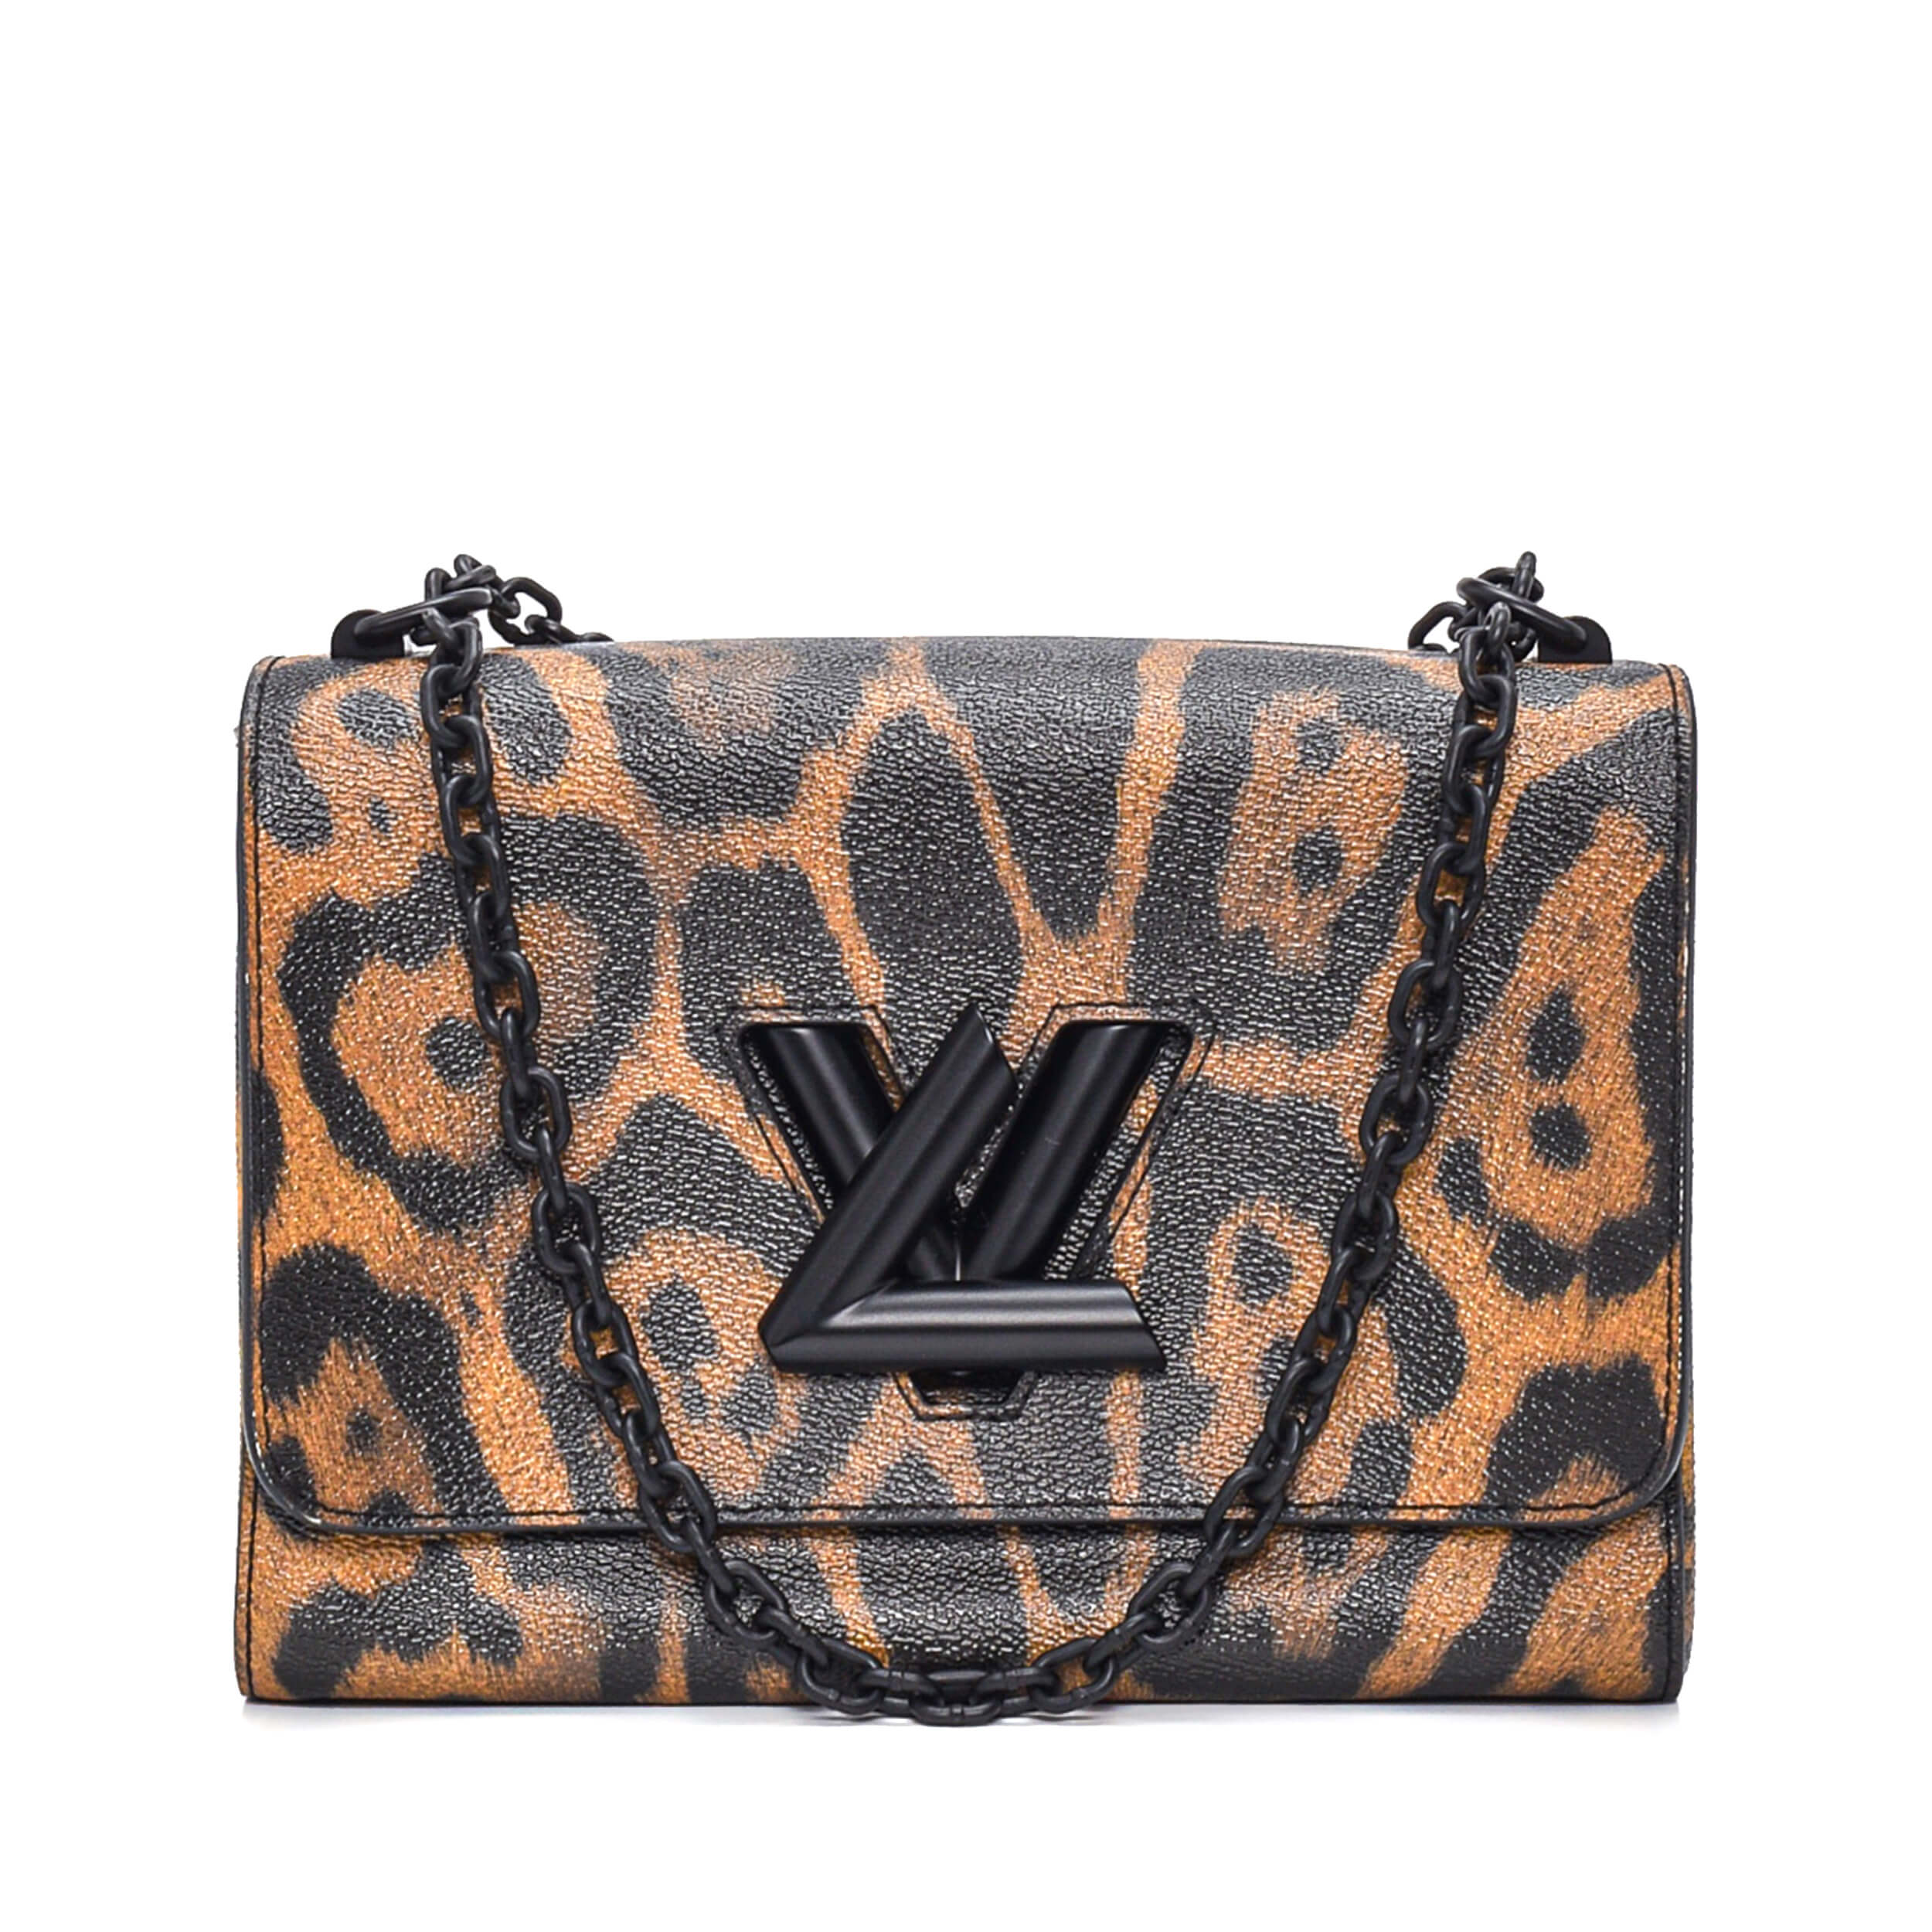 Louis Vuitton - Leopard Print Twist MM Bag